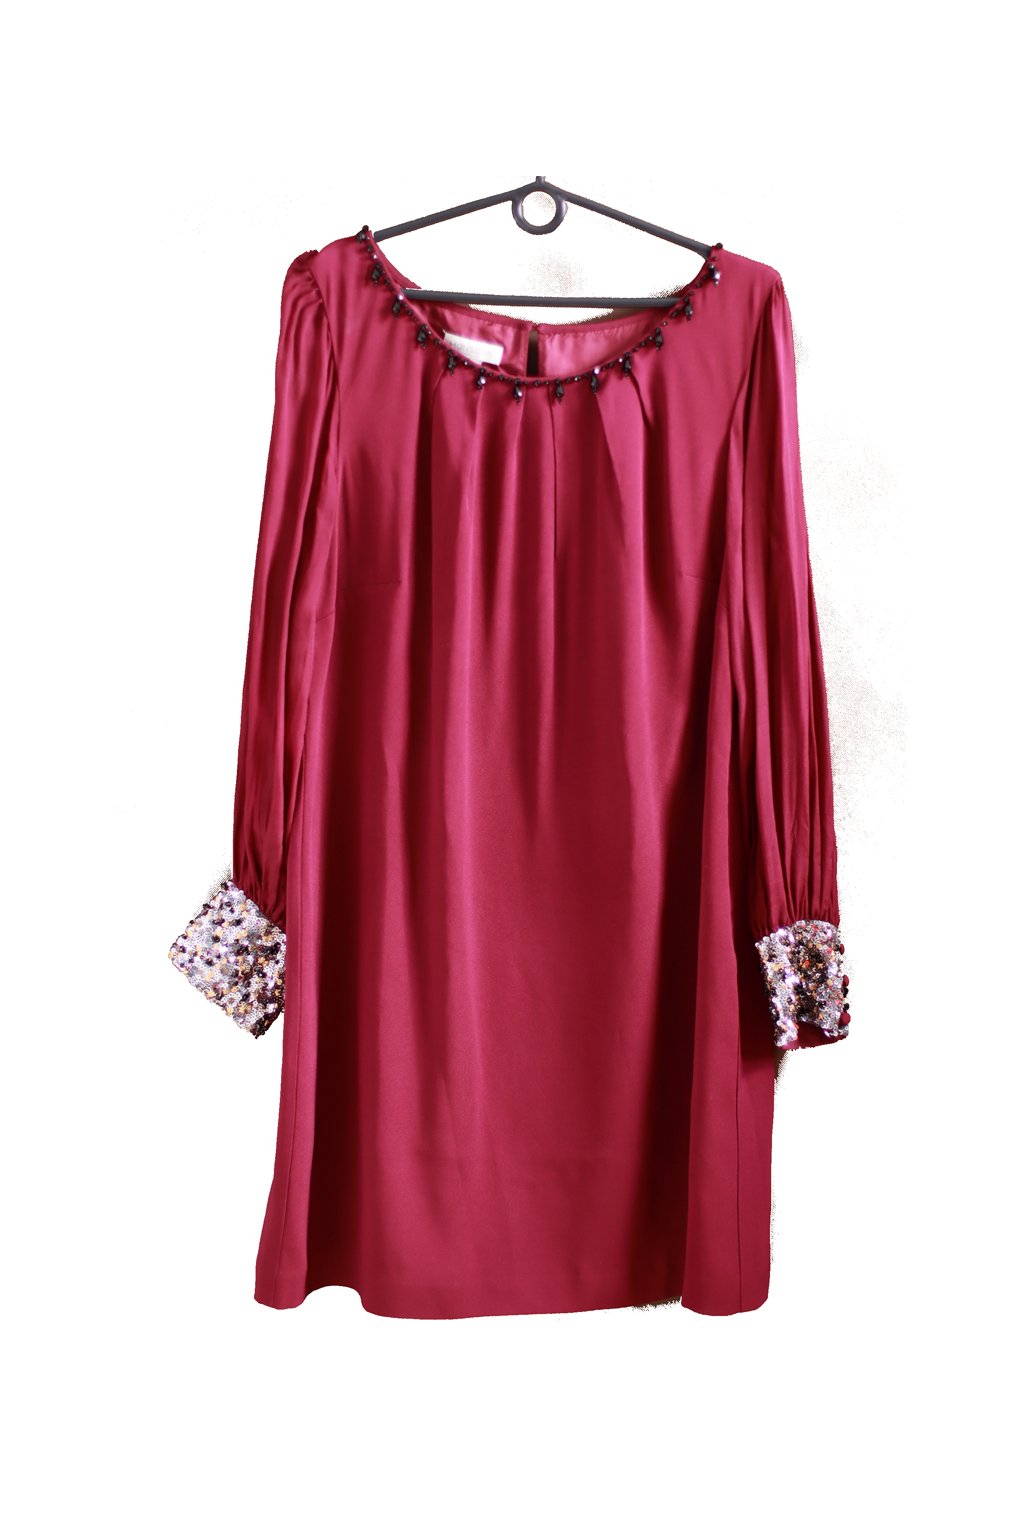 Dámské vínové elegantní šaty s průsvitnými rukávy a flitry na manžetách - MonSoon - XXL (44)